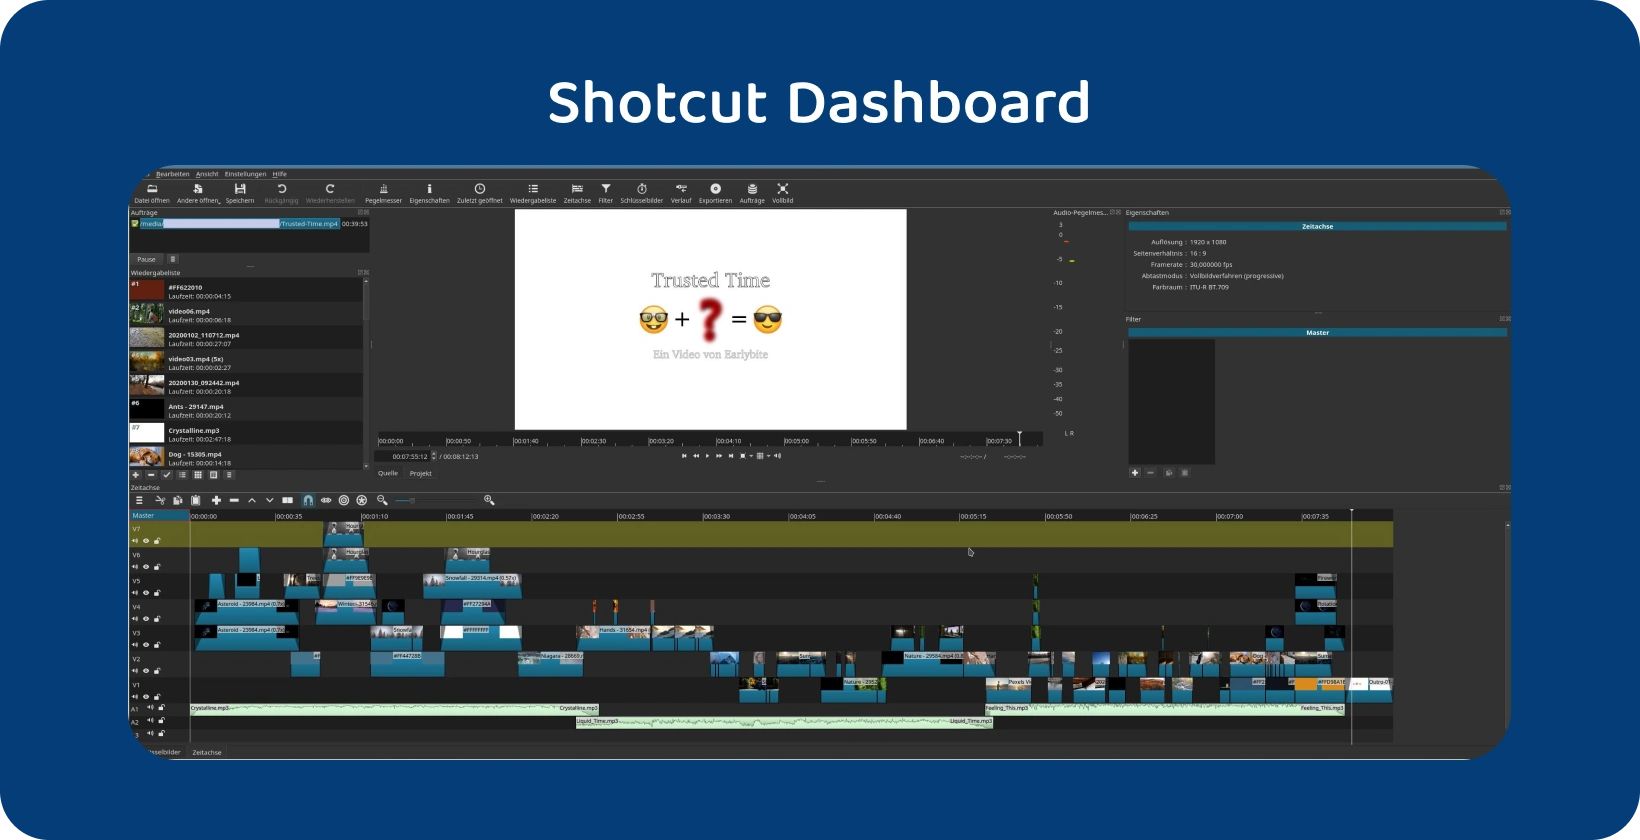 Logiciel de montage vidéo Shotcut affichant une chronologie complexe avec plusieurs pistes, indiquant un projet avancé.